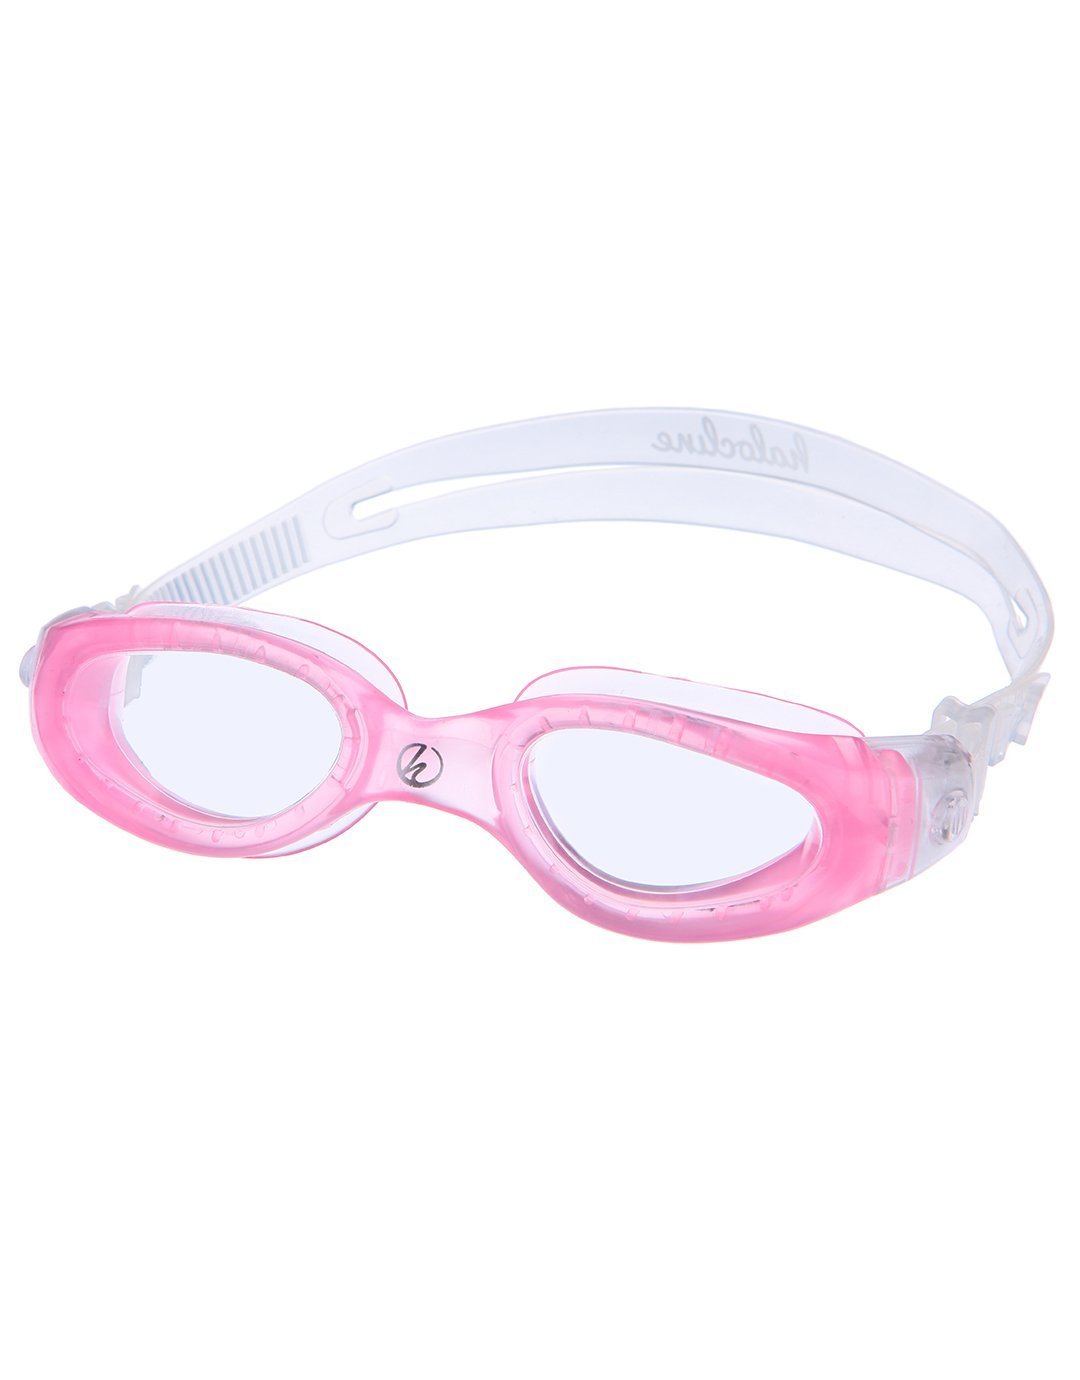 Halocline Comfort Plus Junior Swimming Goggles